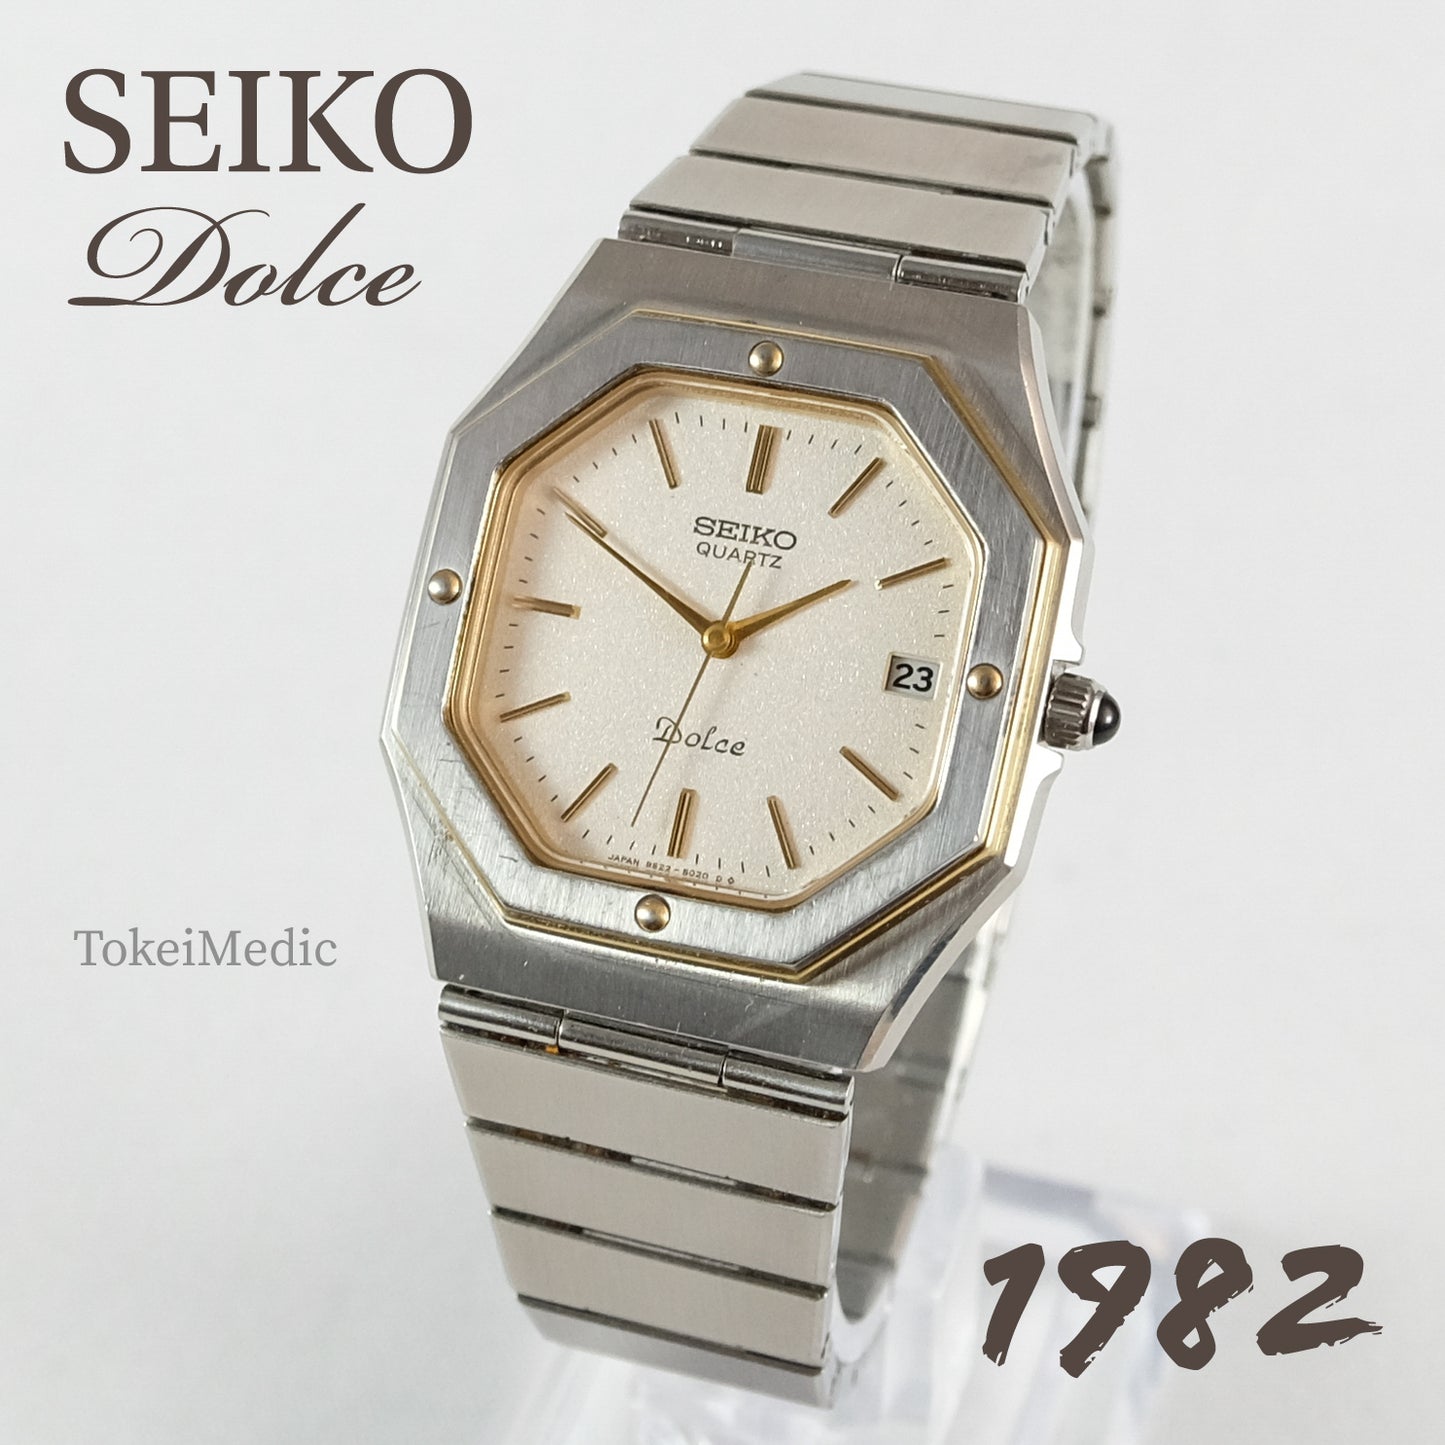 1982 Seiko Dolce 9522-5020